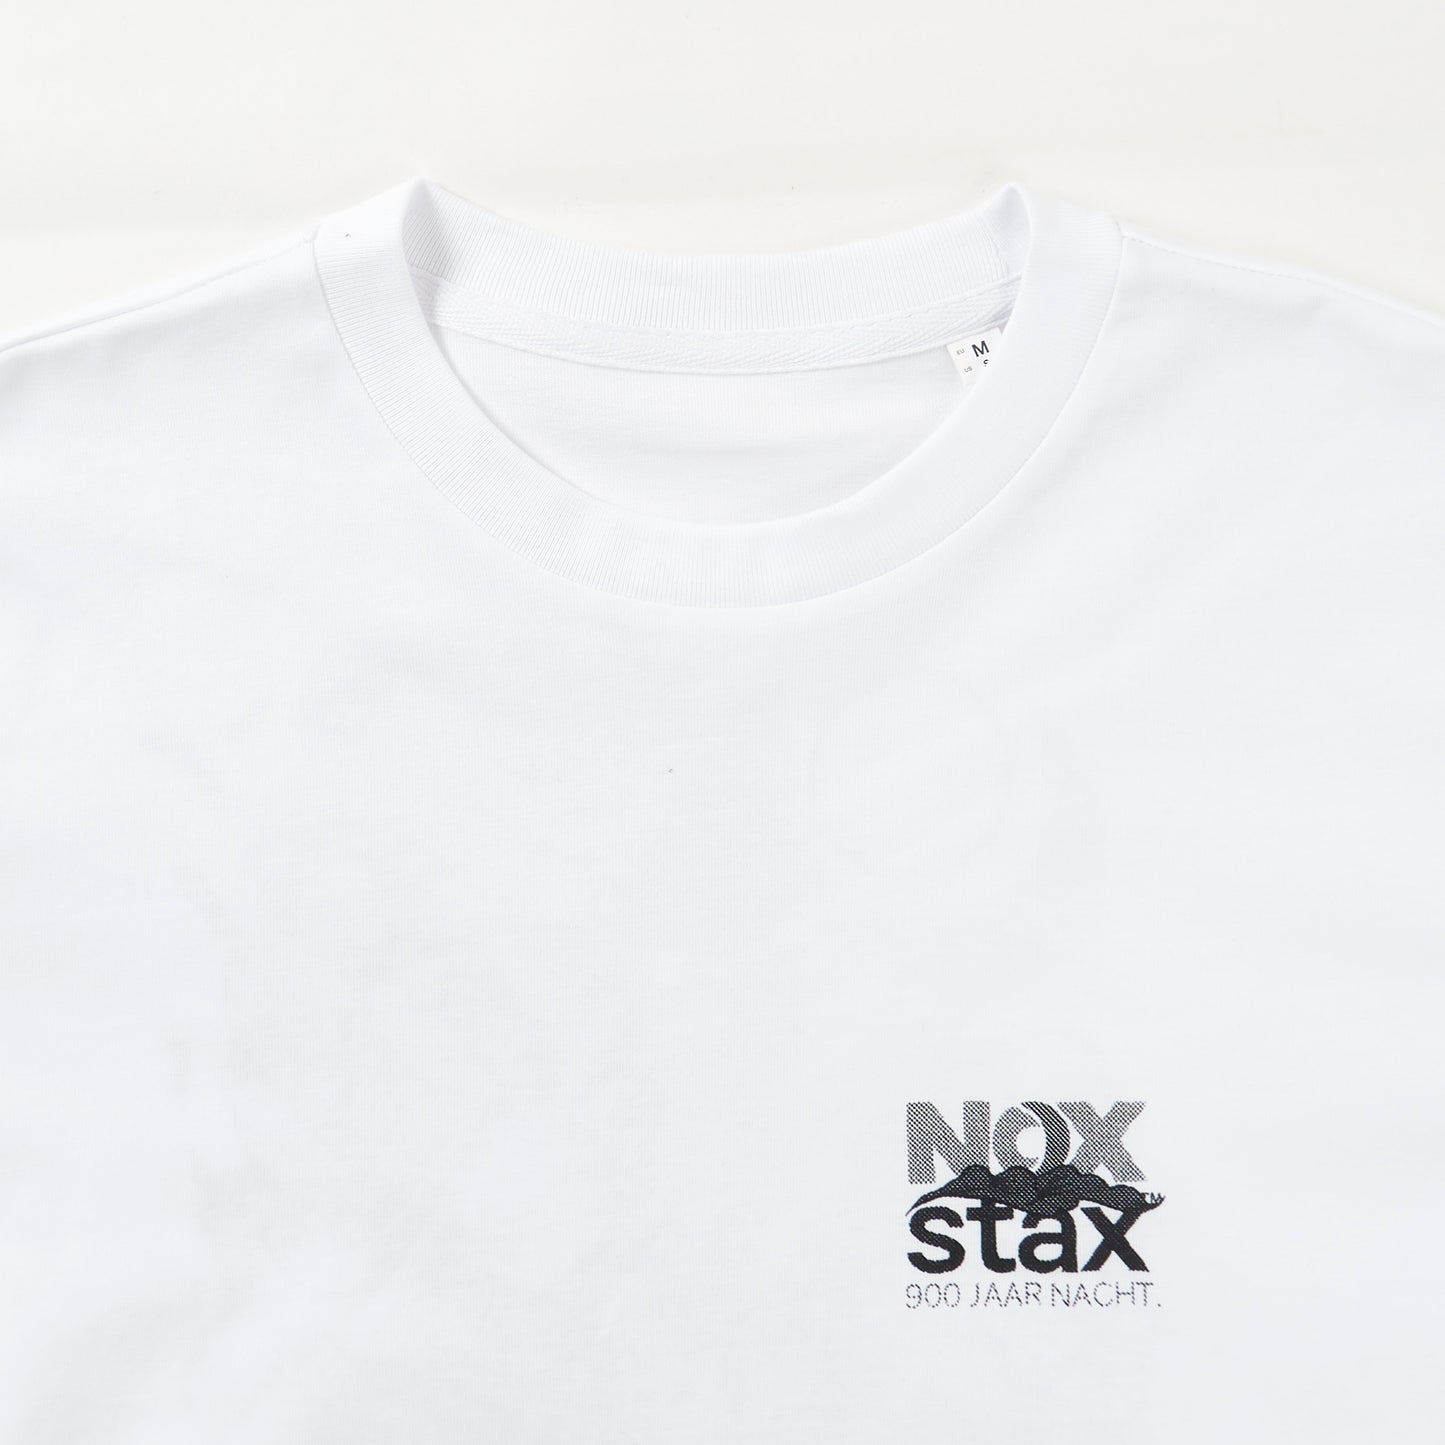 NOX x STAX 900 Jaar Nacht T-shirt